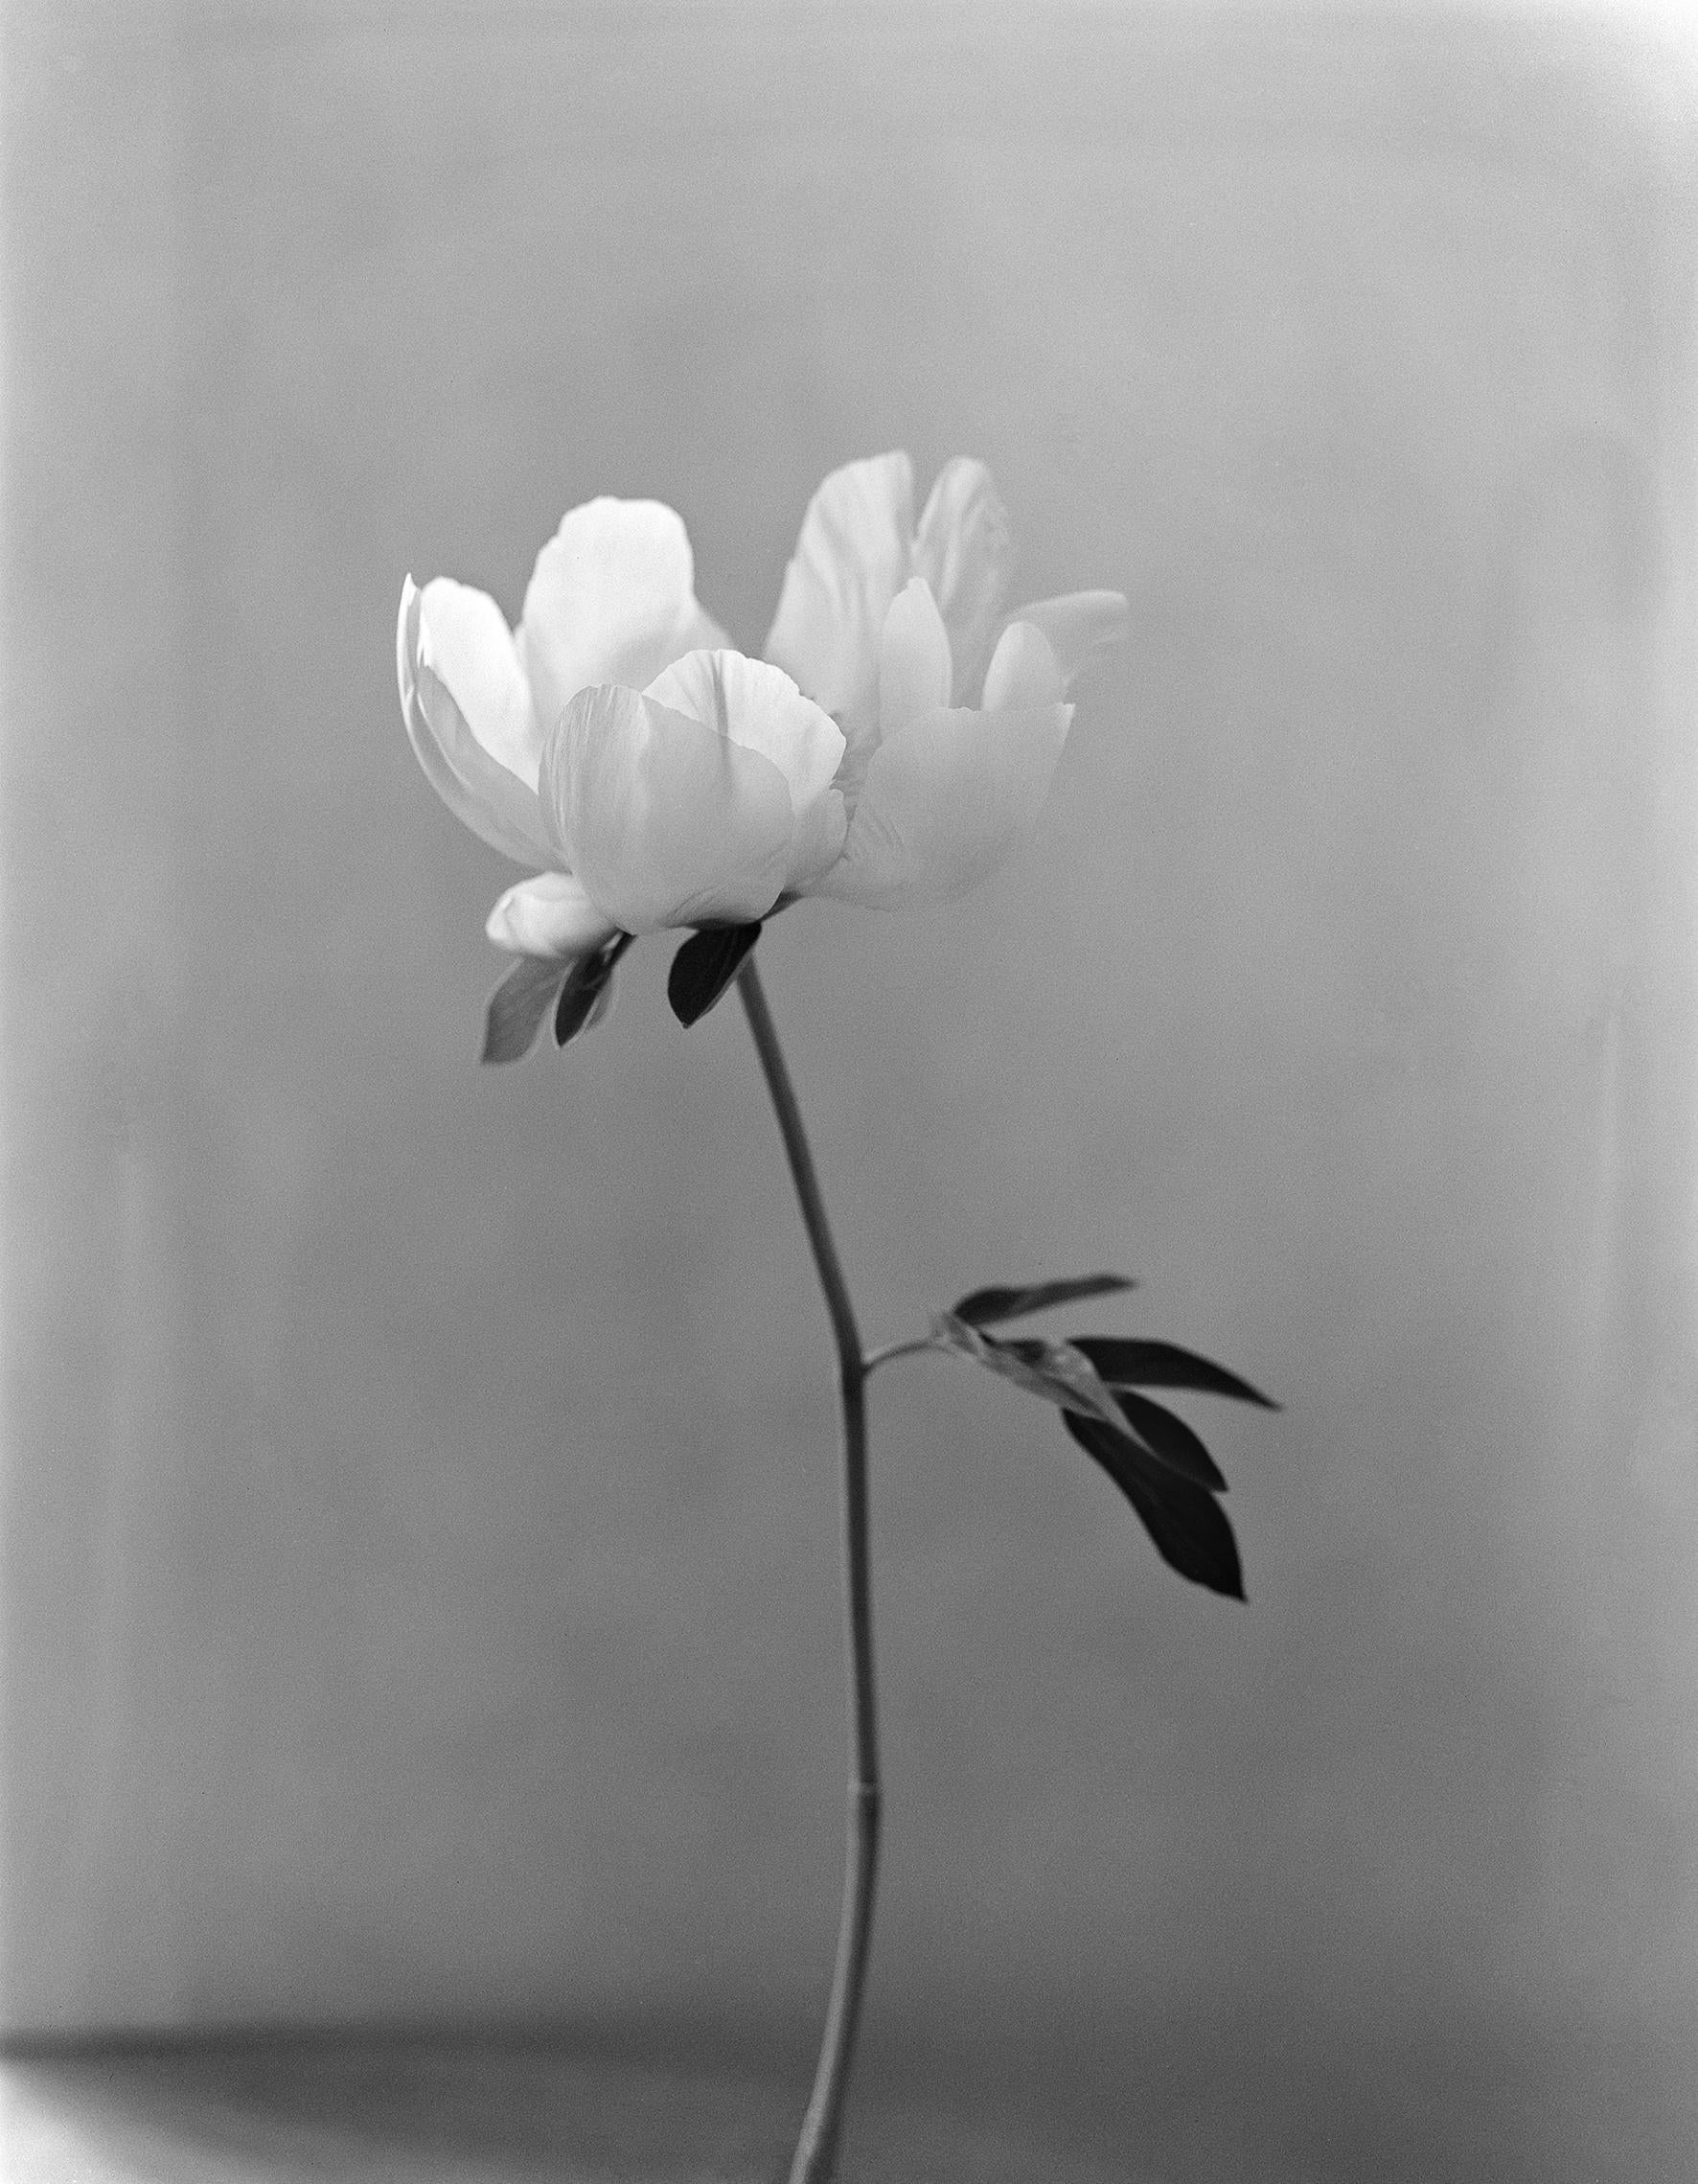 Pfingstrose – analoge Schwarz-Weiß-Blumenfotografie, limitierte Auflage von 15 Stück